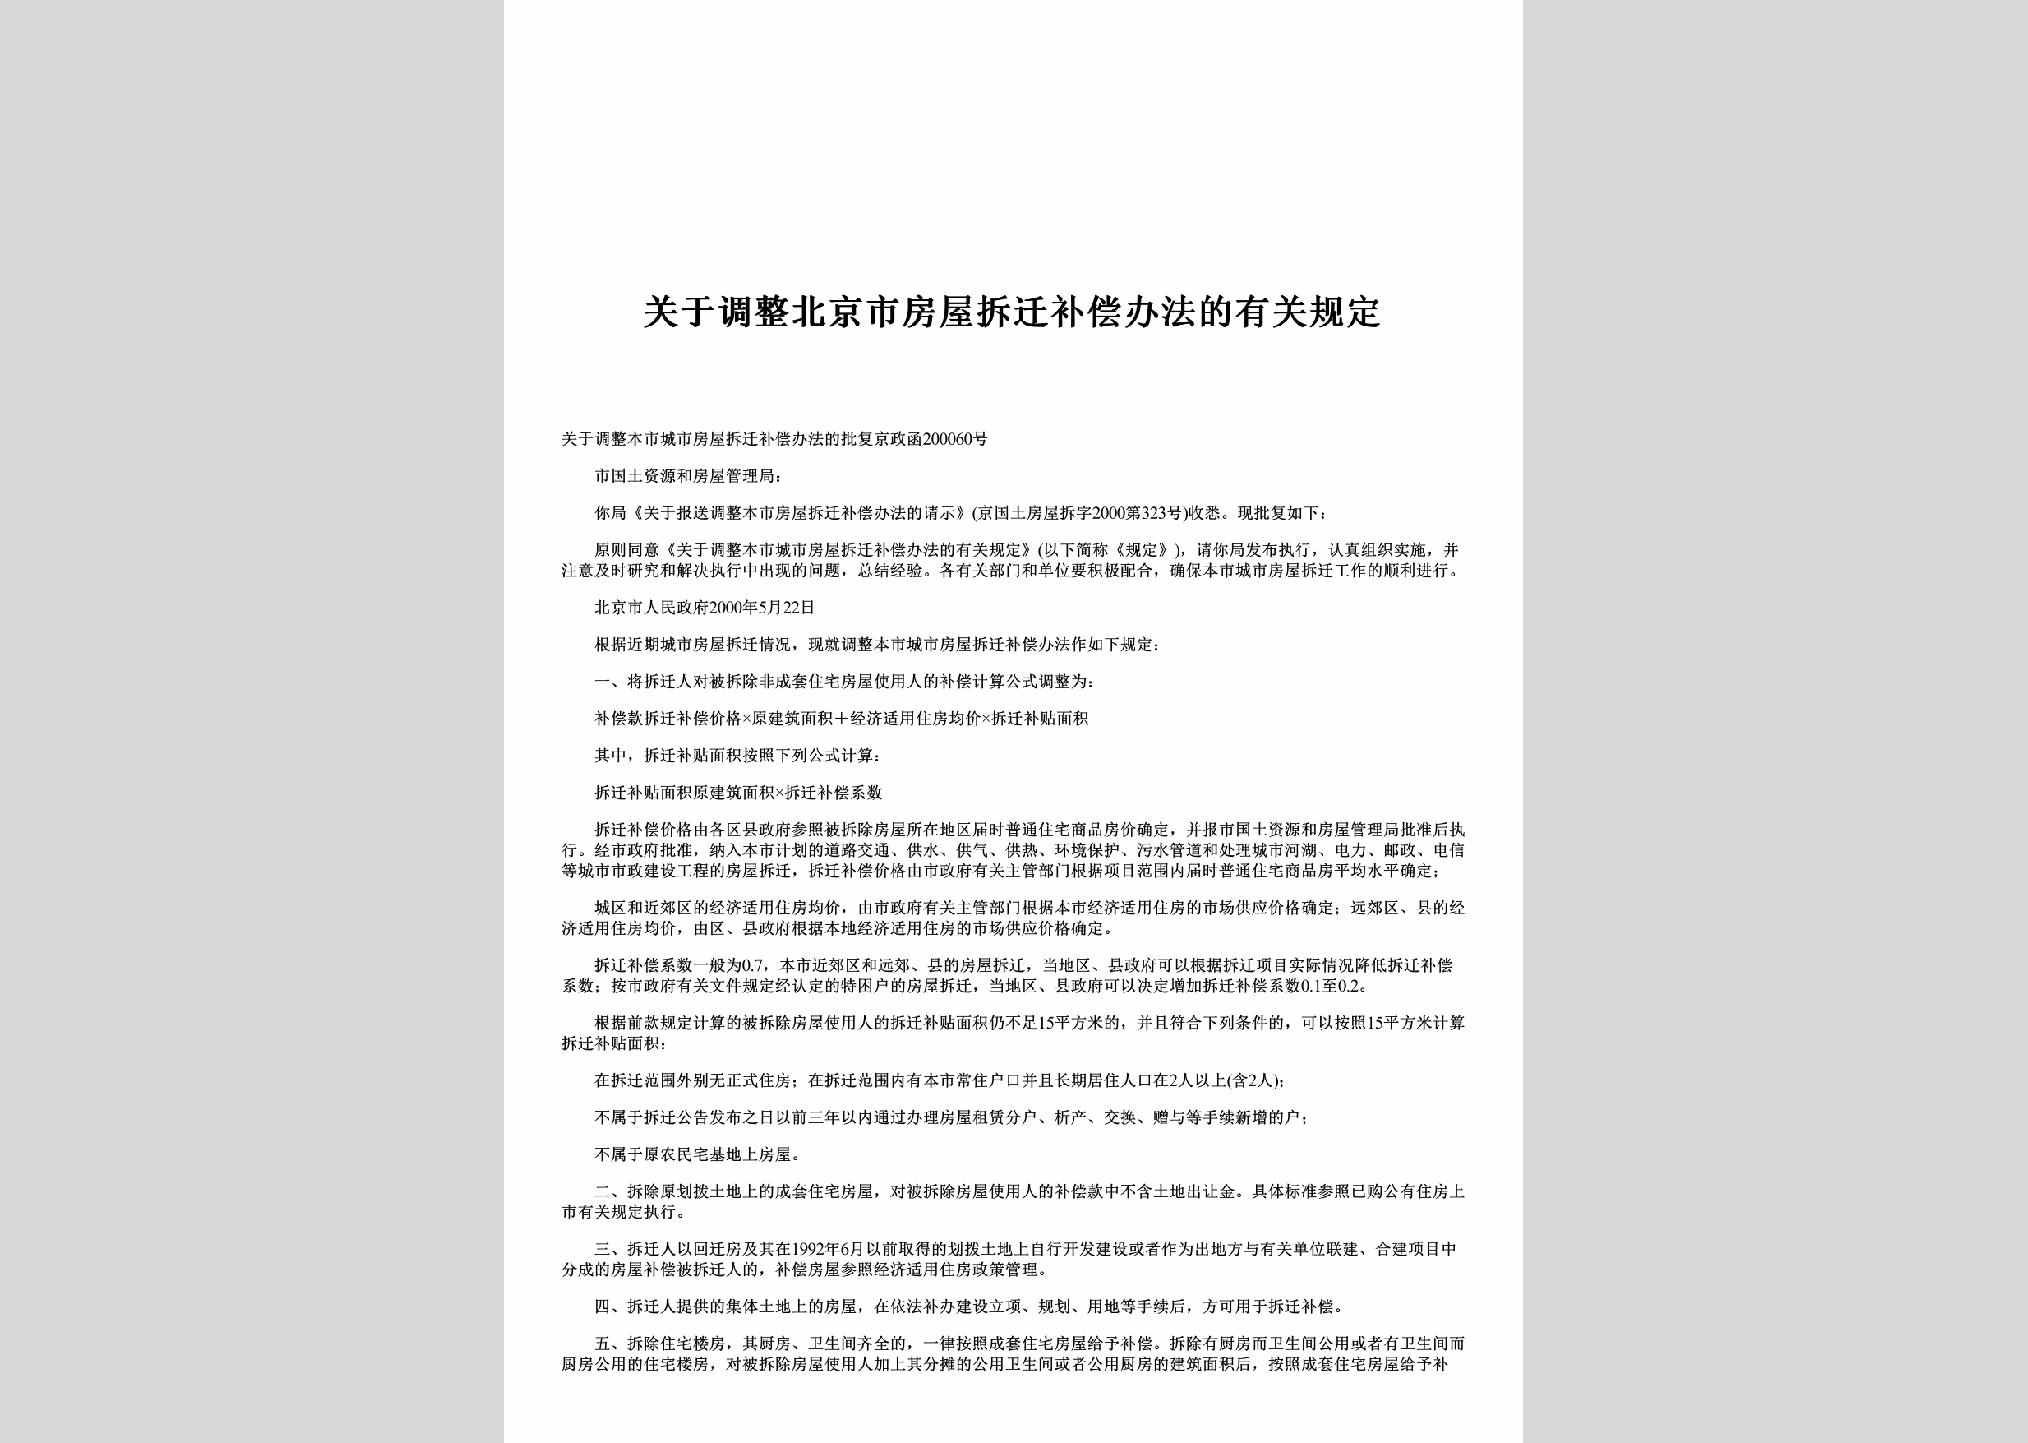 BJ-FWCQBCGD-2000：关于调整北京市房屋拆迁补偿办法的有关规定